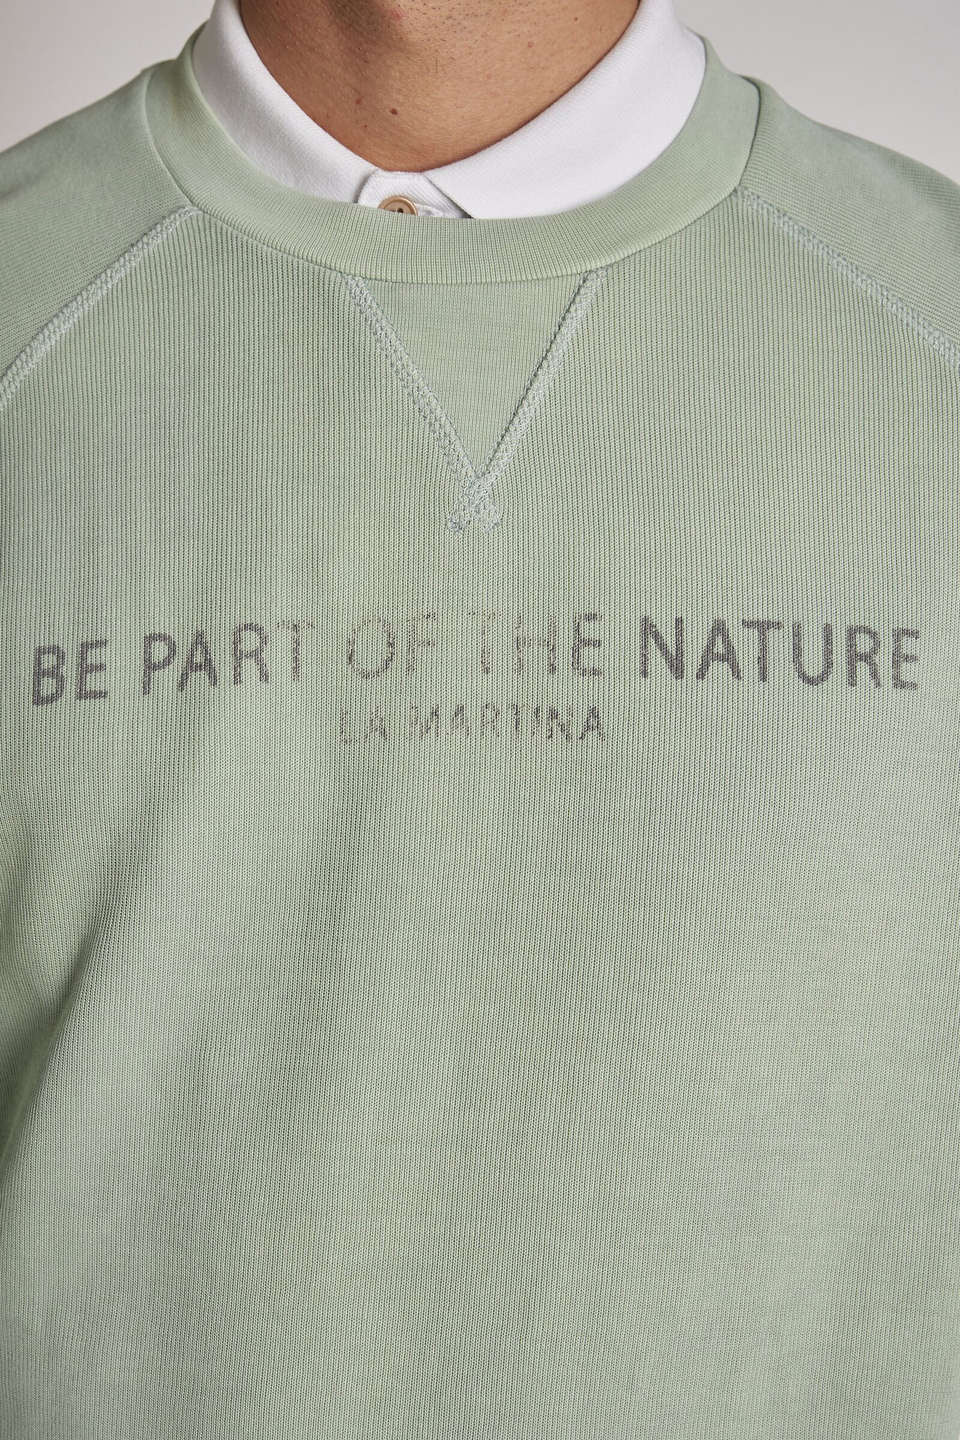 Sudadera de hombre de algodón, cuello redondo, corte regular - La Martina - Official Online Shop